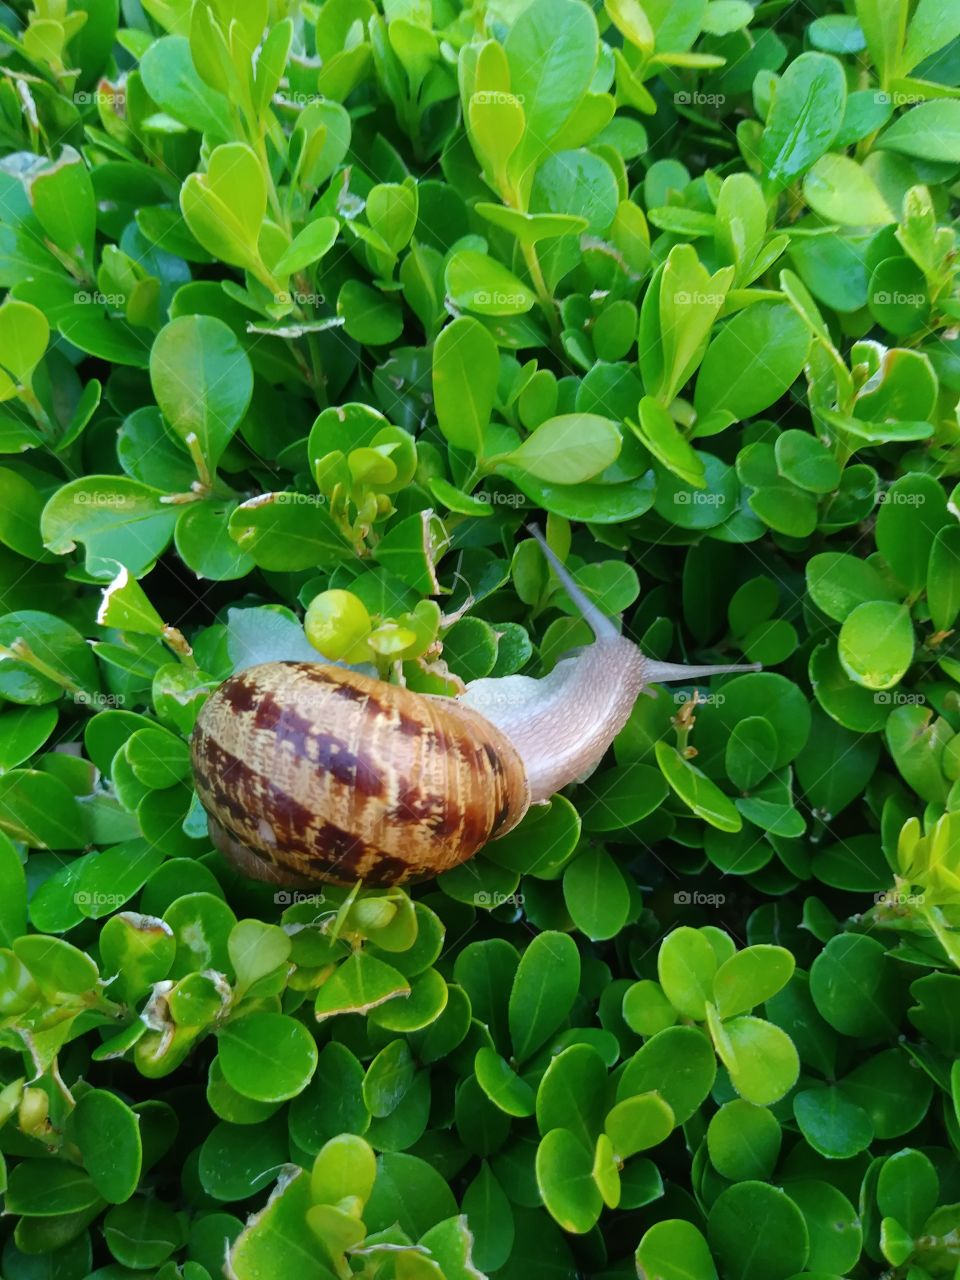 lucky snail